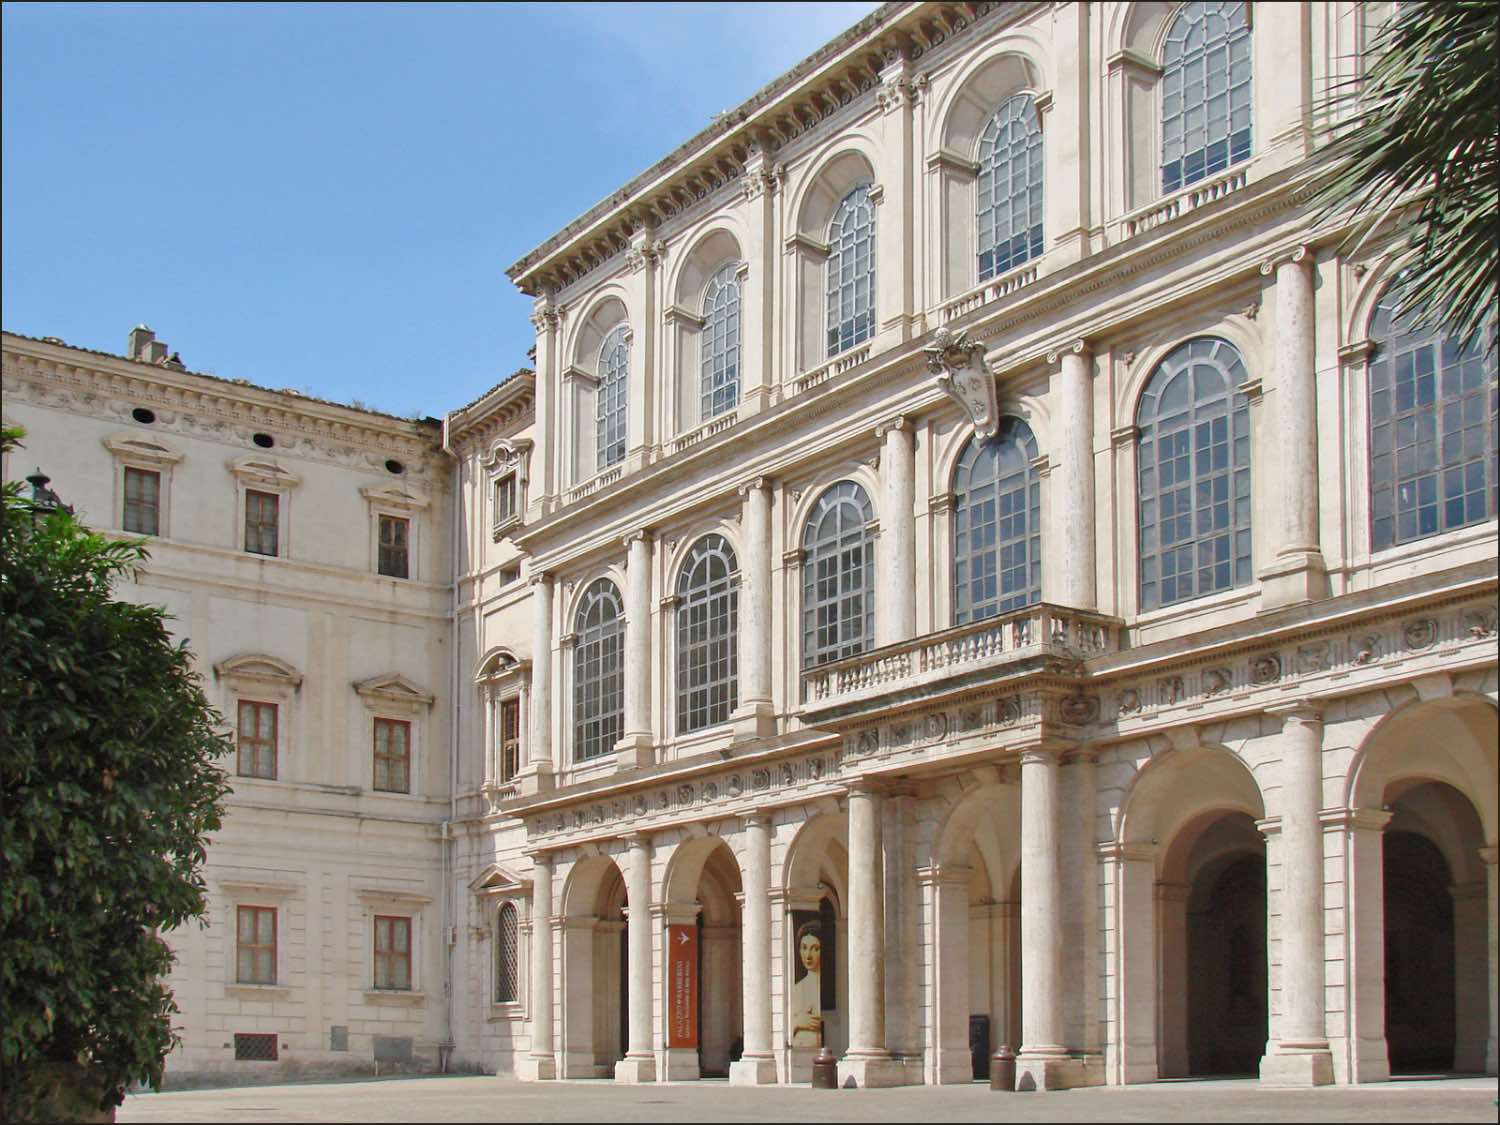 palazzo barberini en roma, palacio de arquitectura barroca con ventanales